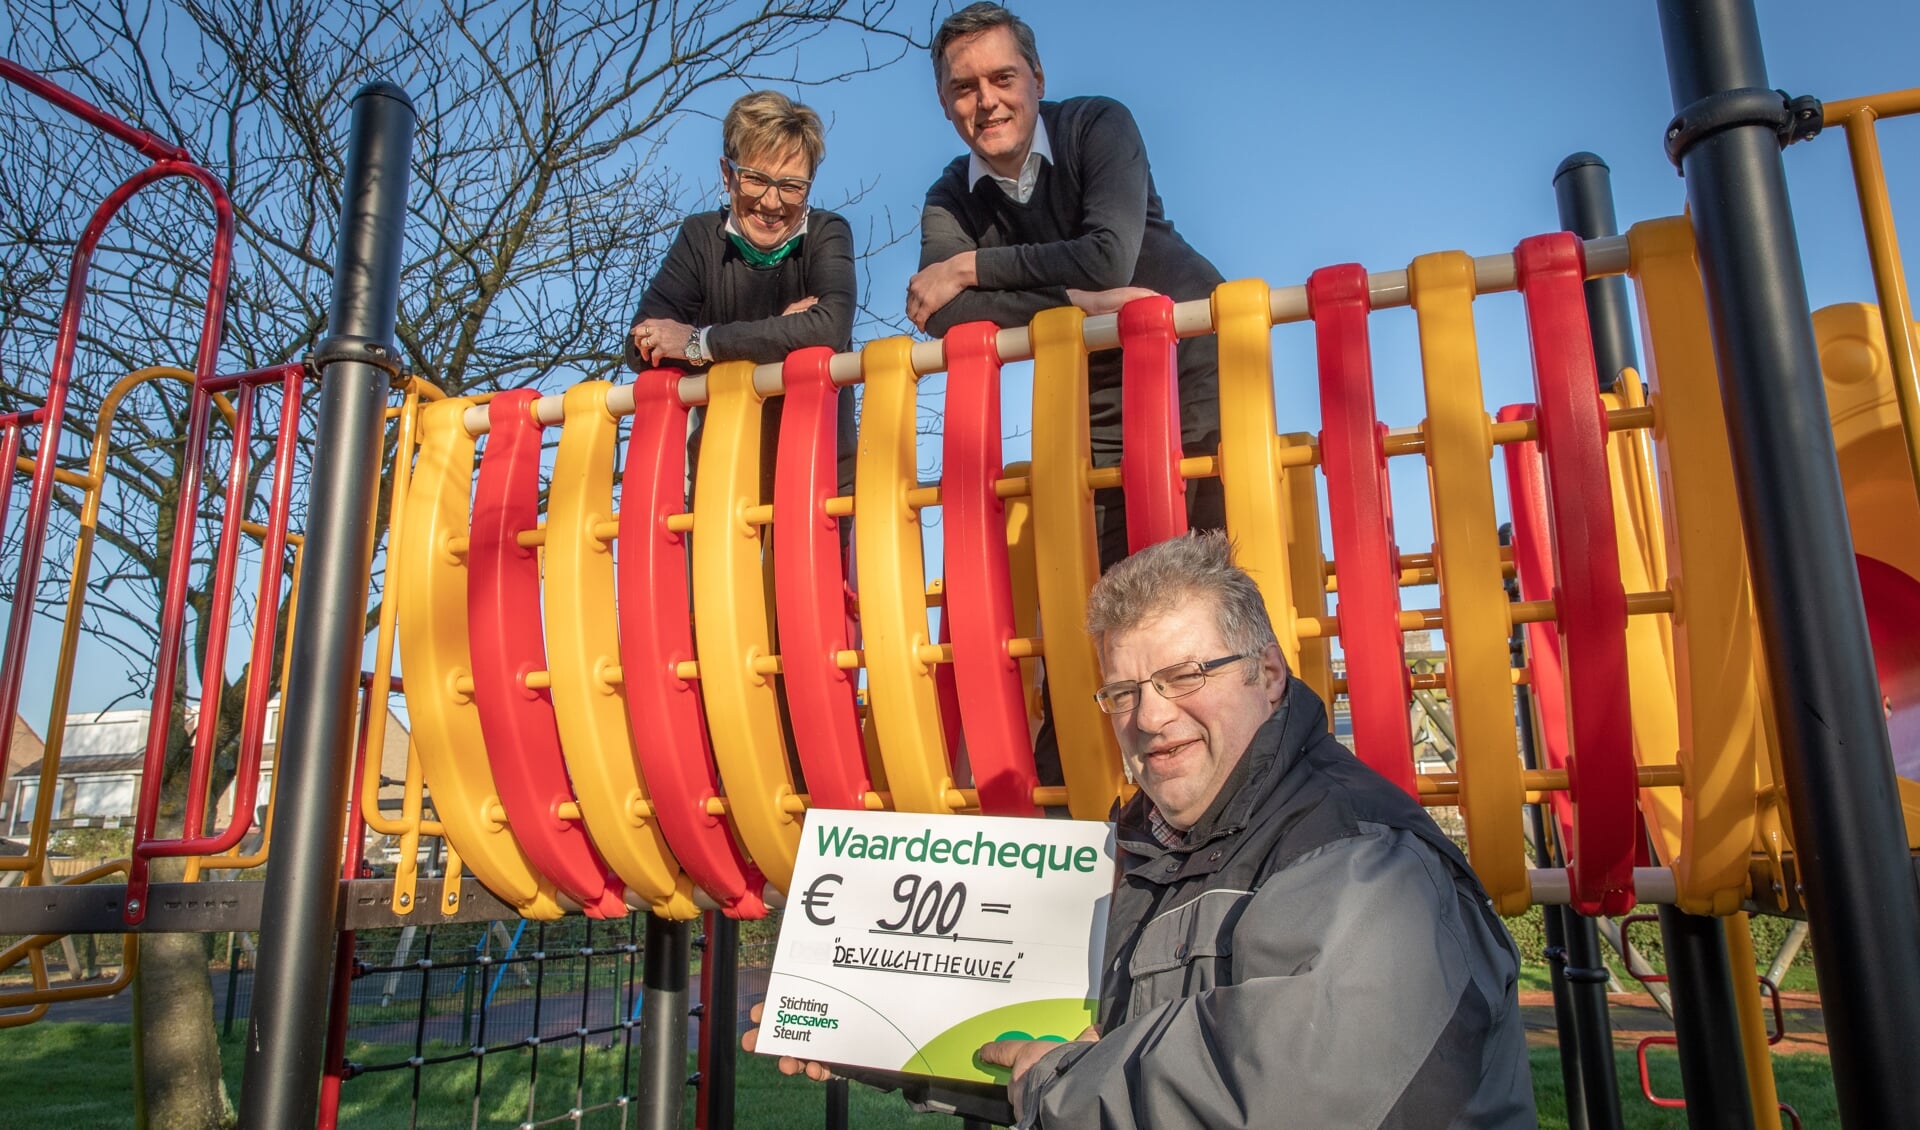 Stichting Specsavers Steunt steunt speeltuin 'de vluchtheuvel' uit Nieuwdorp met een waardecheque; bestuurslid Sam van Gurp neemt de cheque in ontvangst van Diana van Bavel en Wouter de Groot